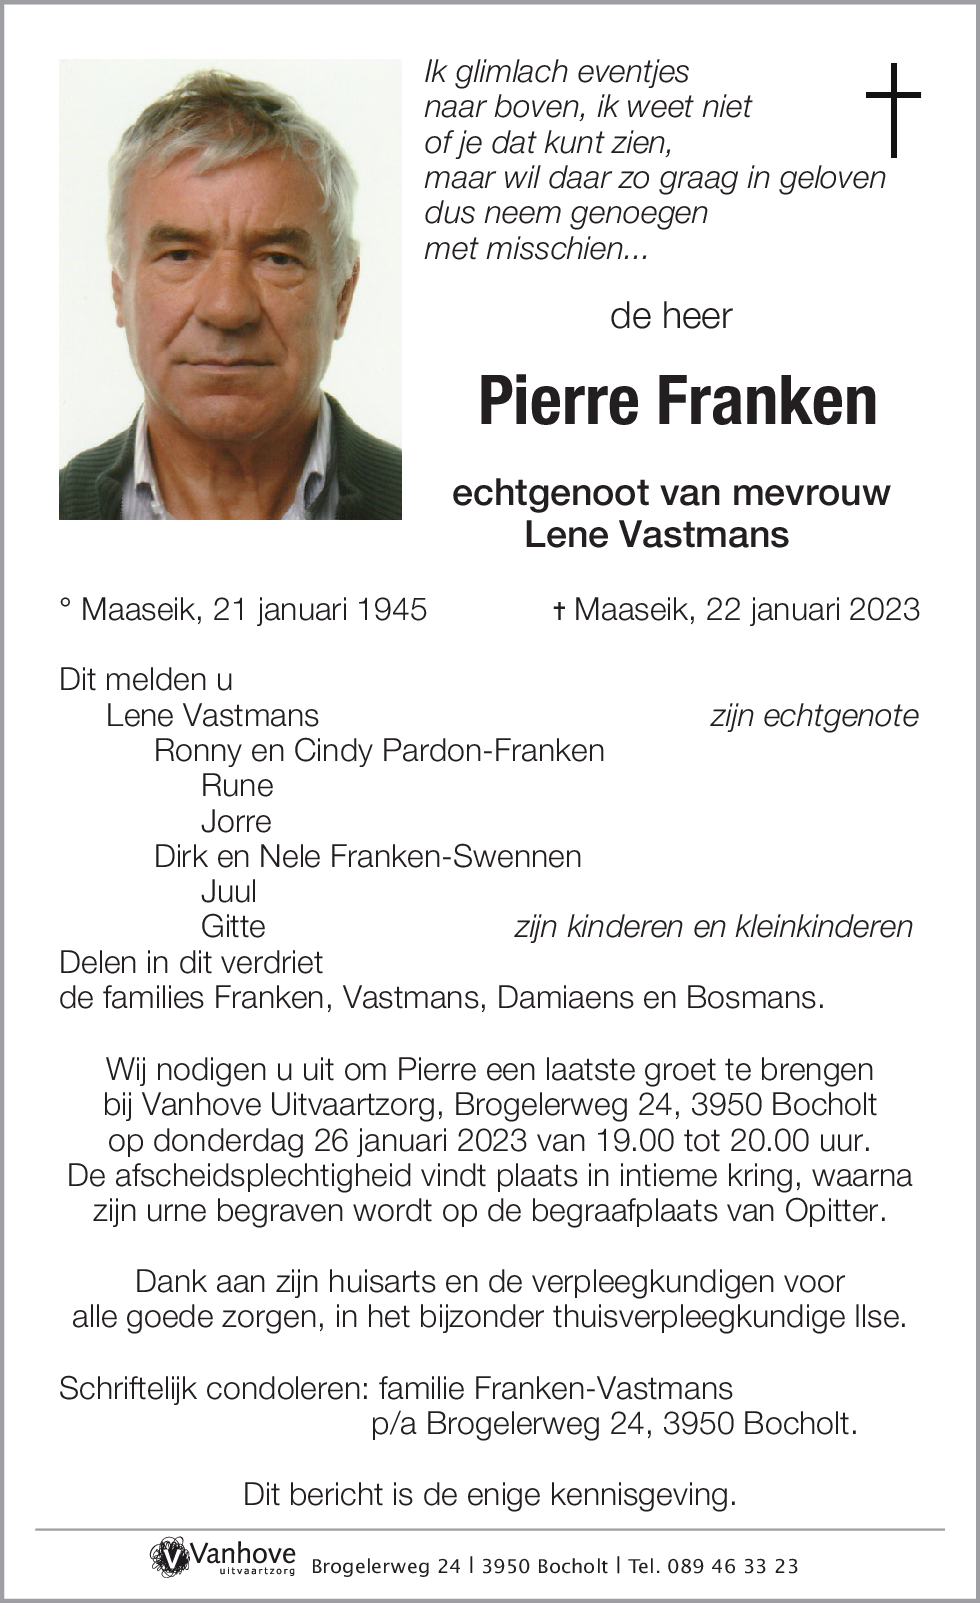 Pierre Franken